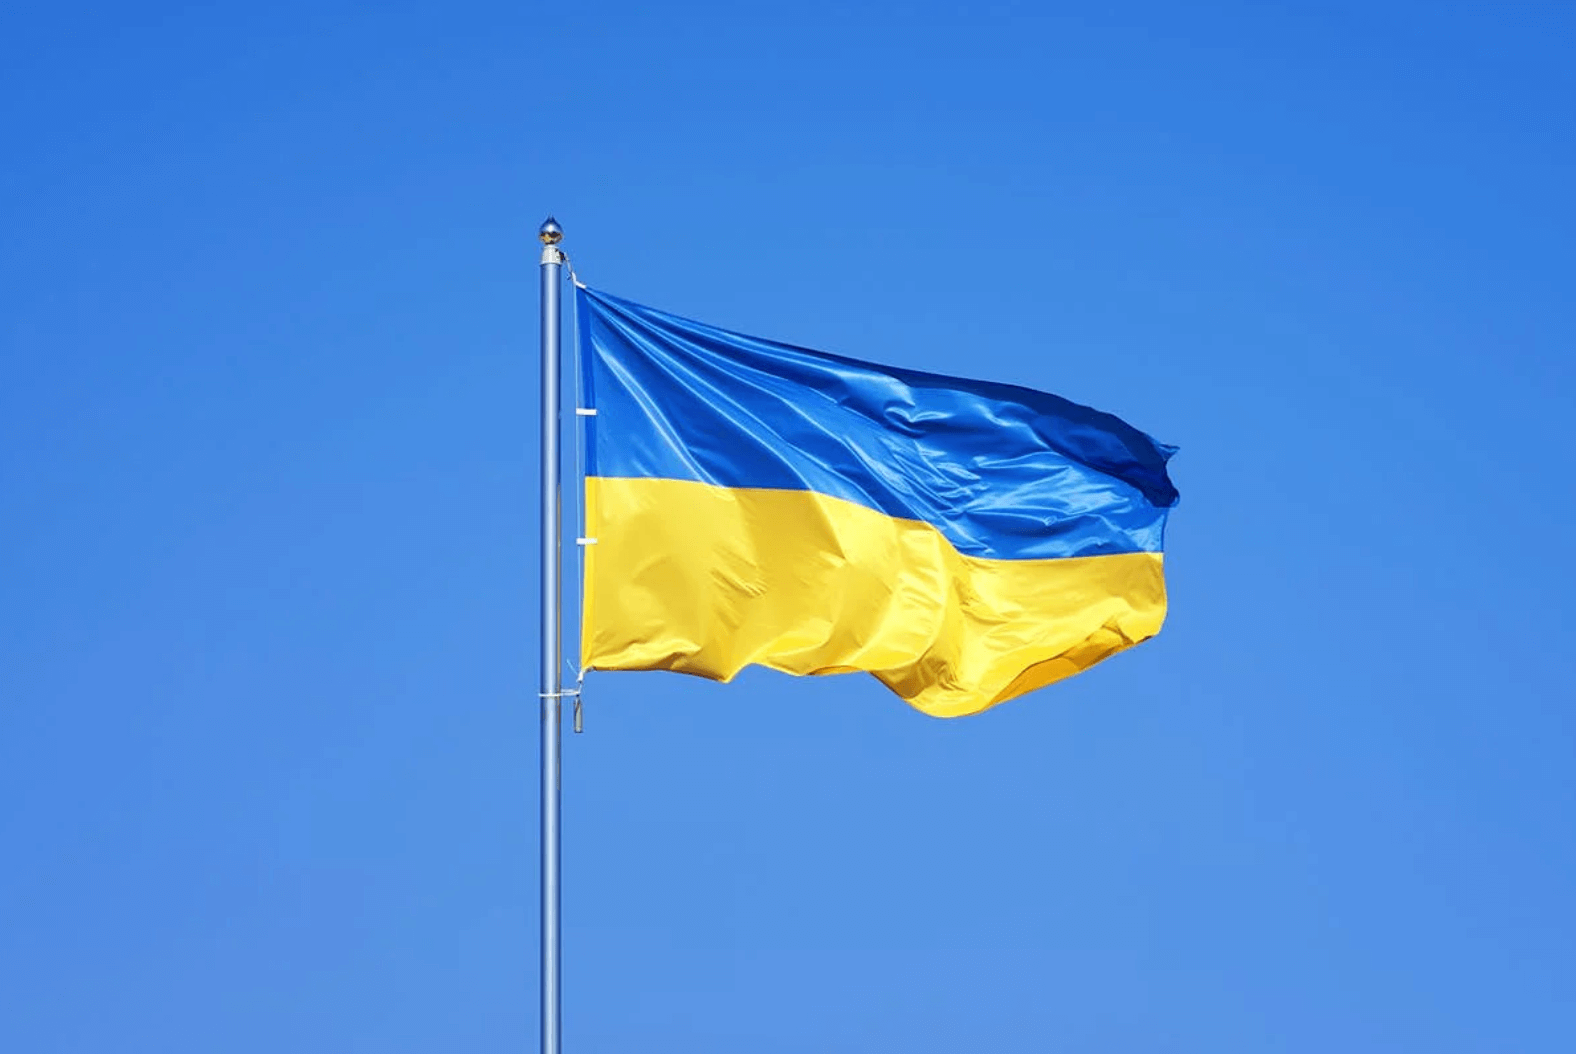 Guerra in Ucraina, la mobilitazione dell’iGaming